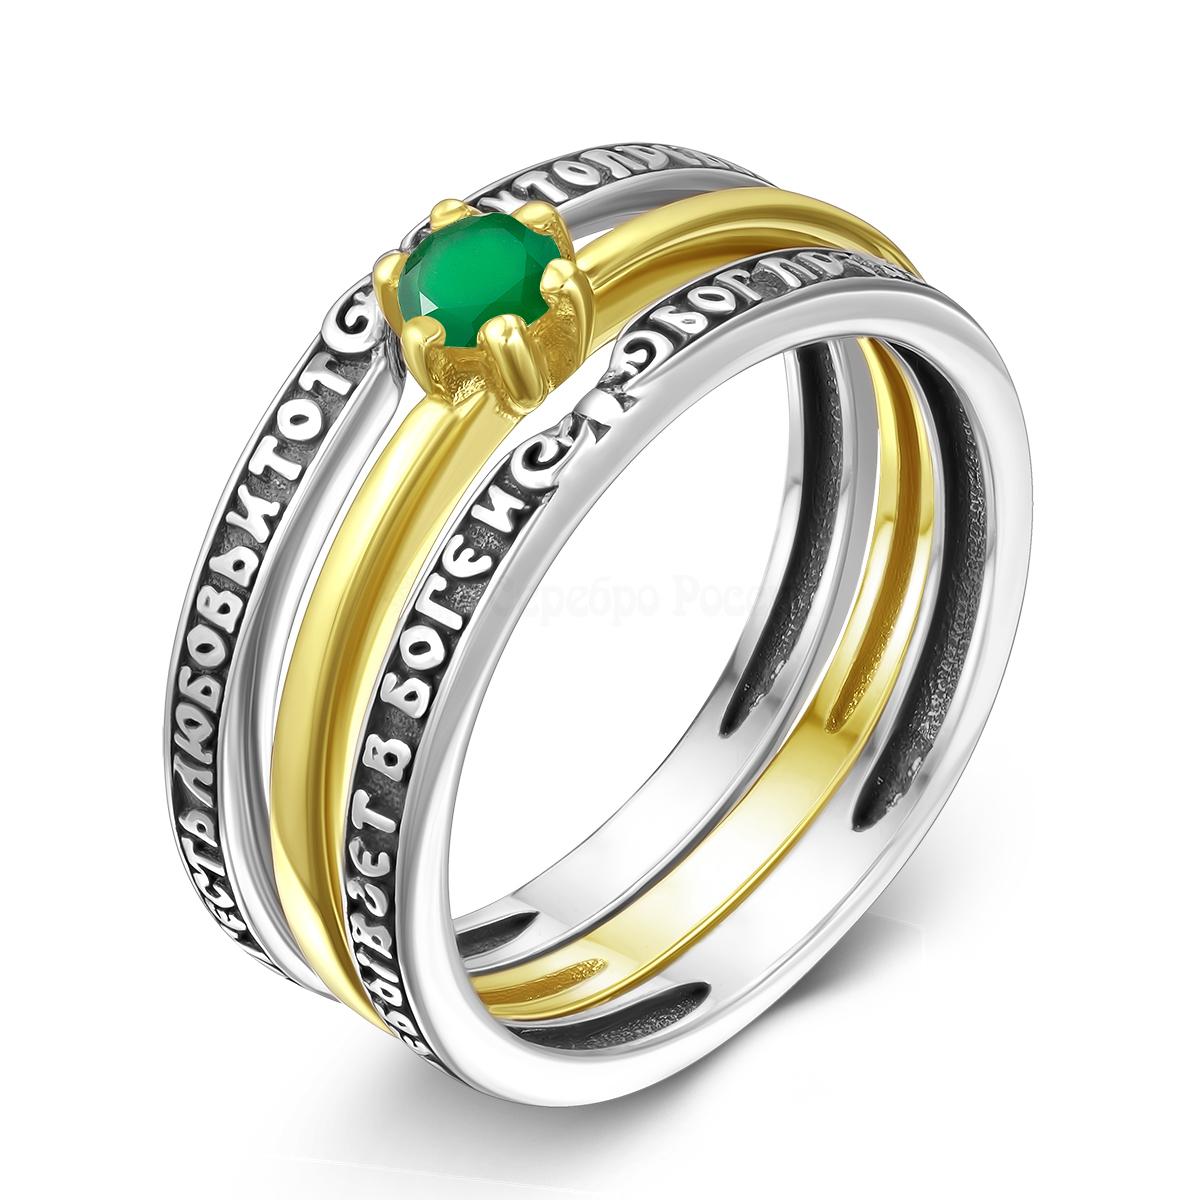 Кольцо тройное из чернёного серебра с нат.зелёным агатом и золочением - Бог есть любовь 1-200члз409